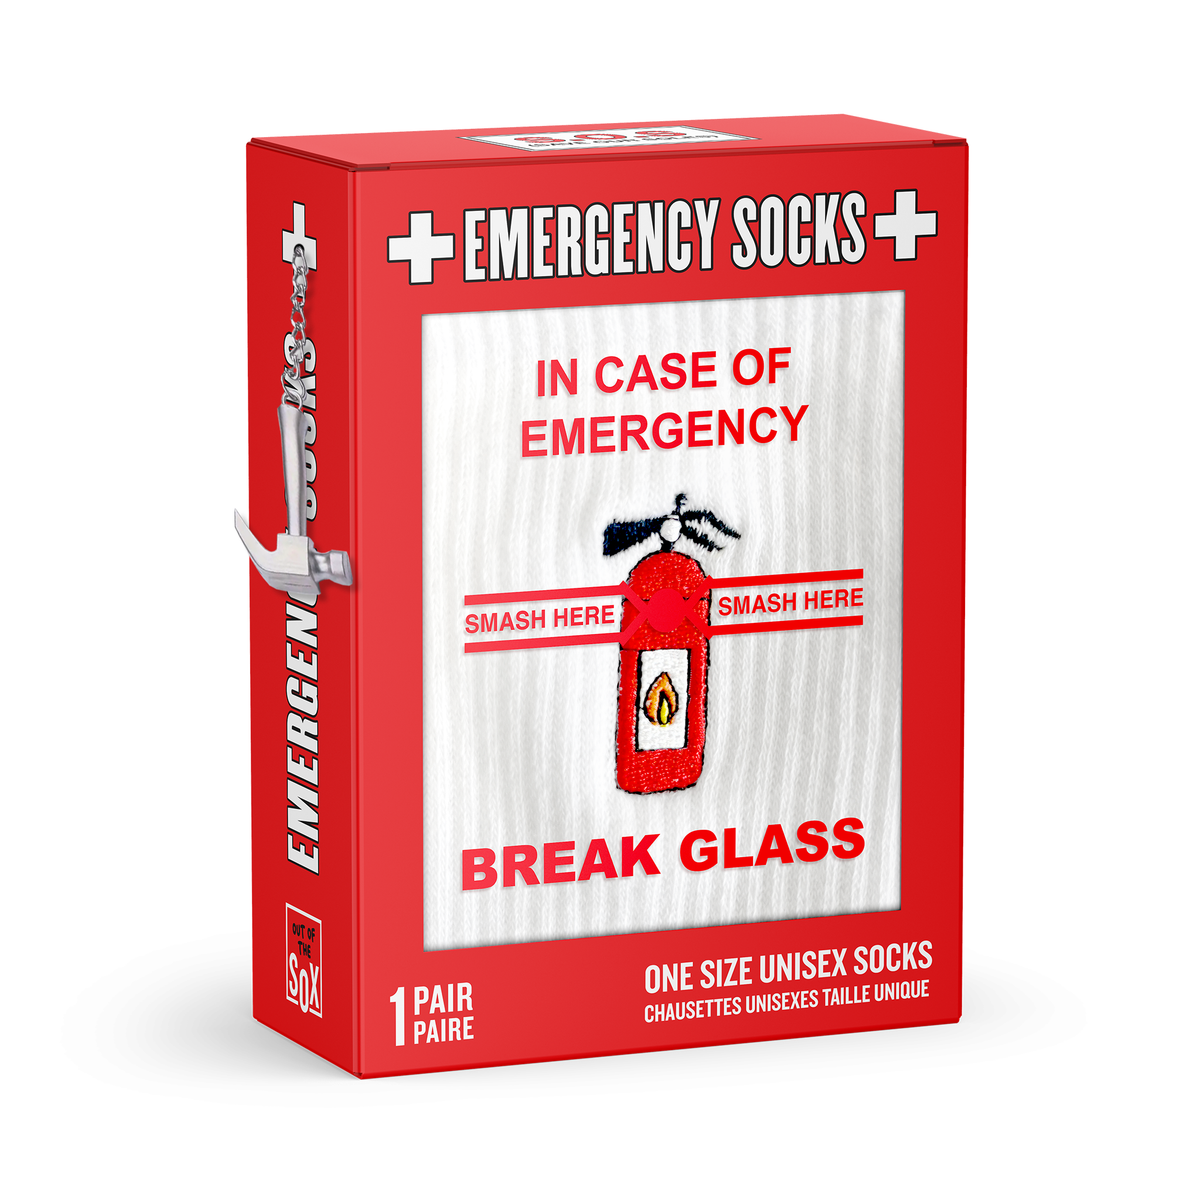 In Case of Emergency, Break Glass! Socks